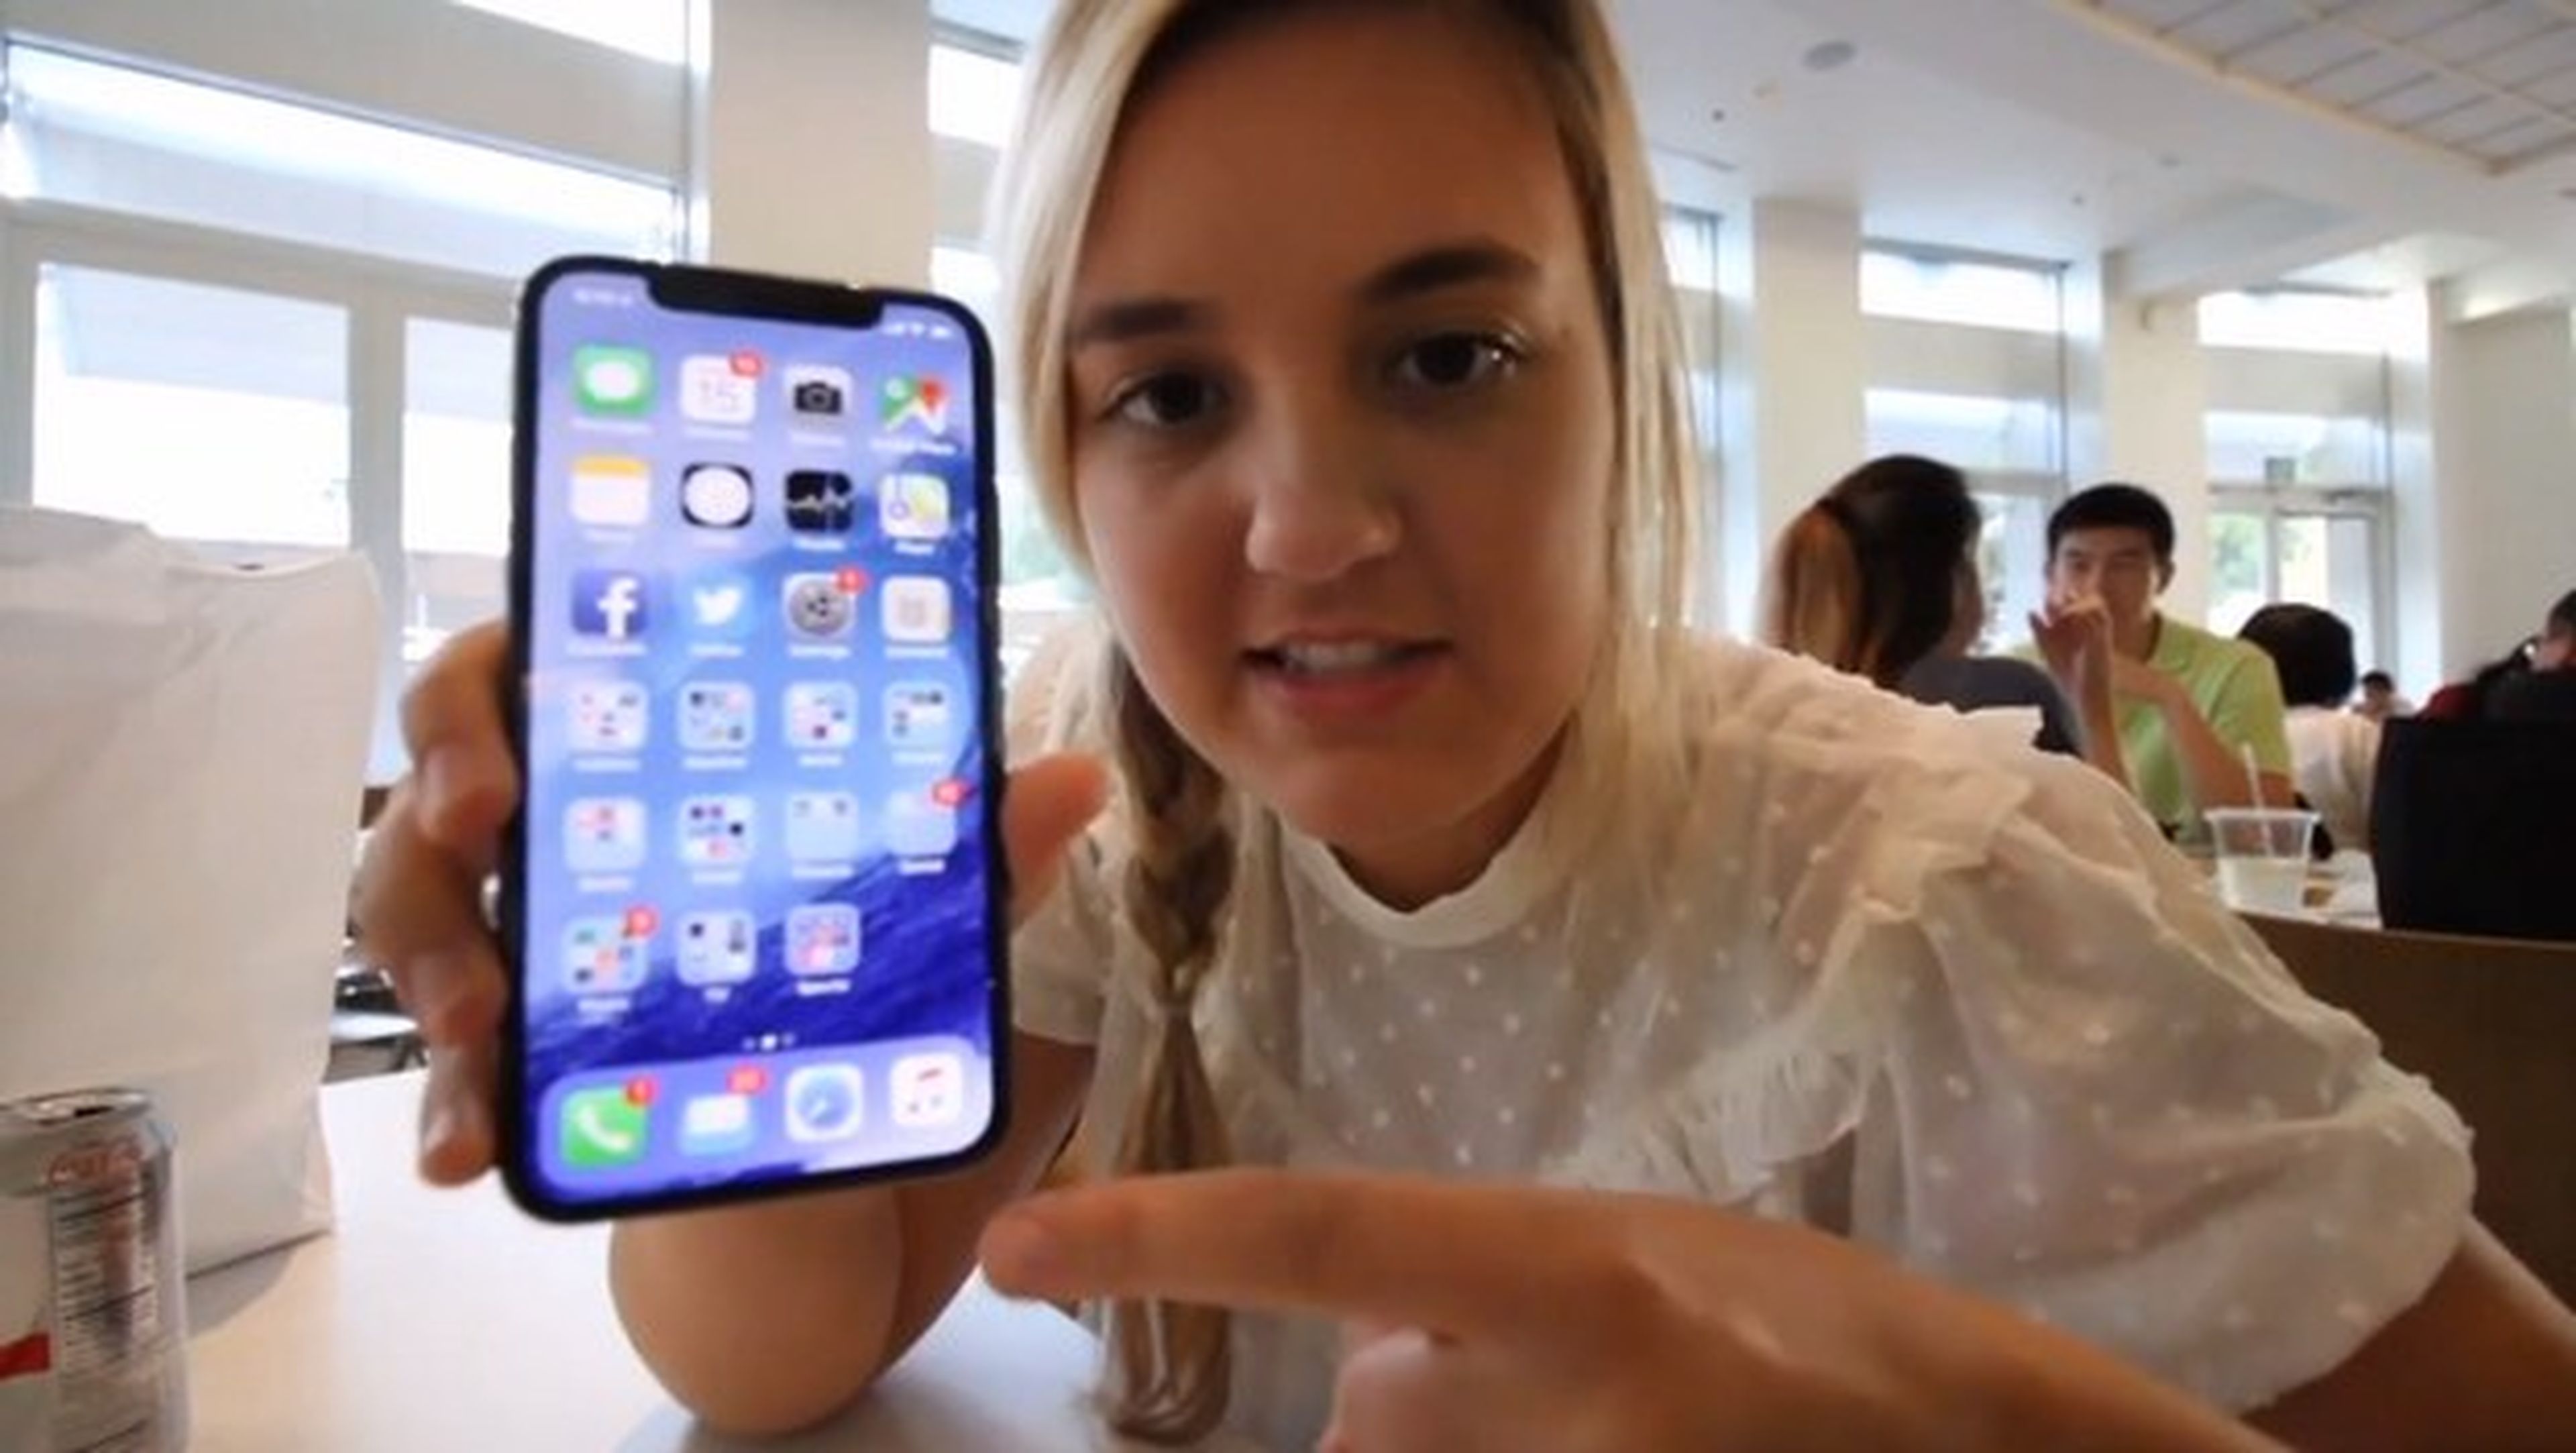 Apple despide a ingeniero porque su hija youtuber filtró el iPhone X